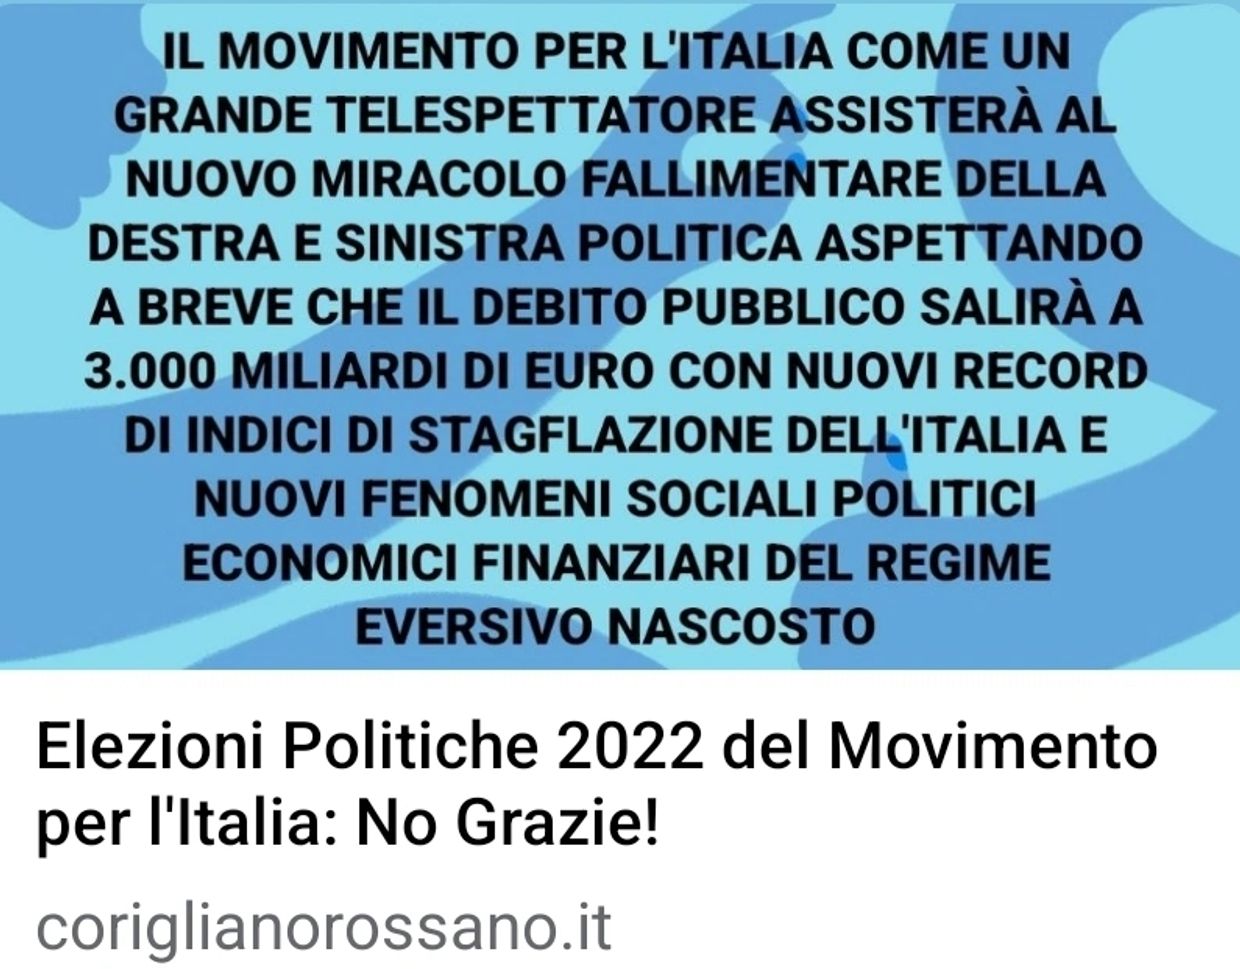 Movimento per l'Italia - Gianluca Giuseppe Caracciolo - Forza Italia  - Movimento Cinque Stelle